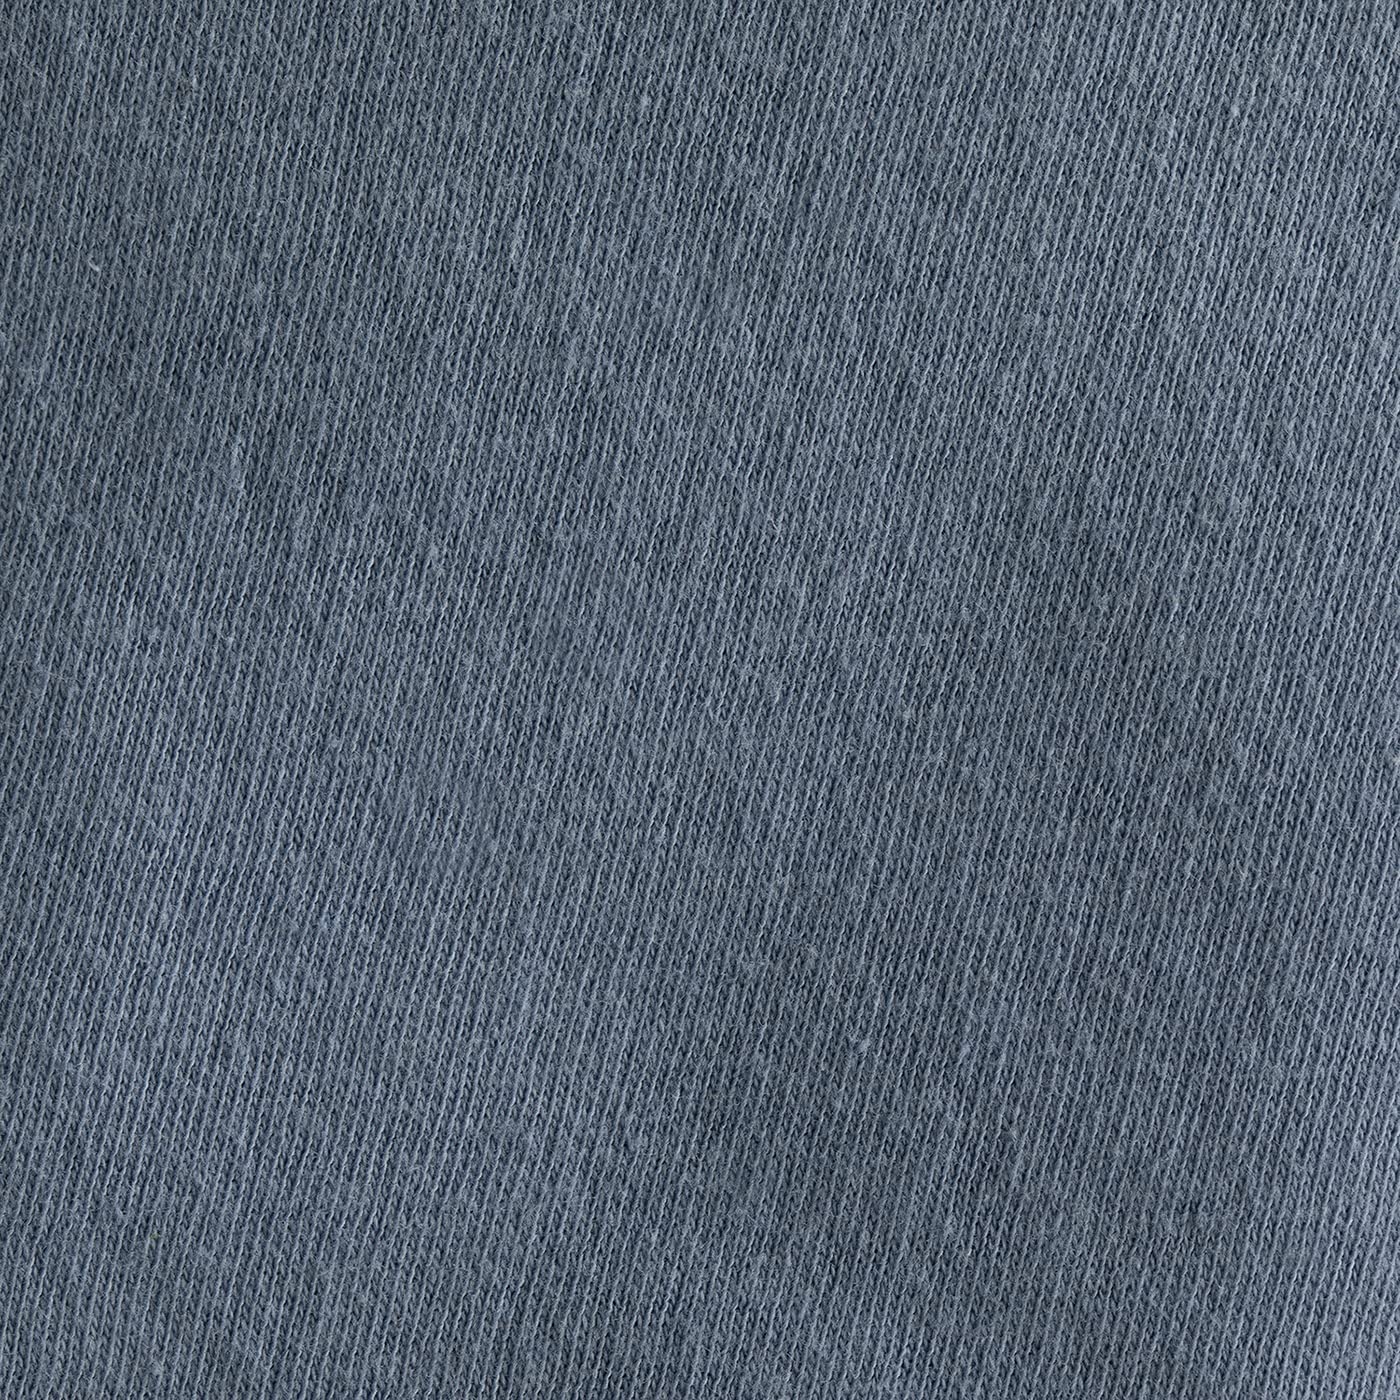 Baltic Linen Jersey Cotton Sheet Set, Full, Blue, 4 Piece